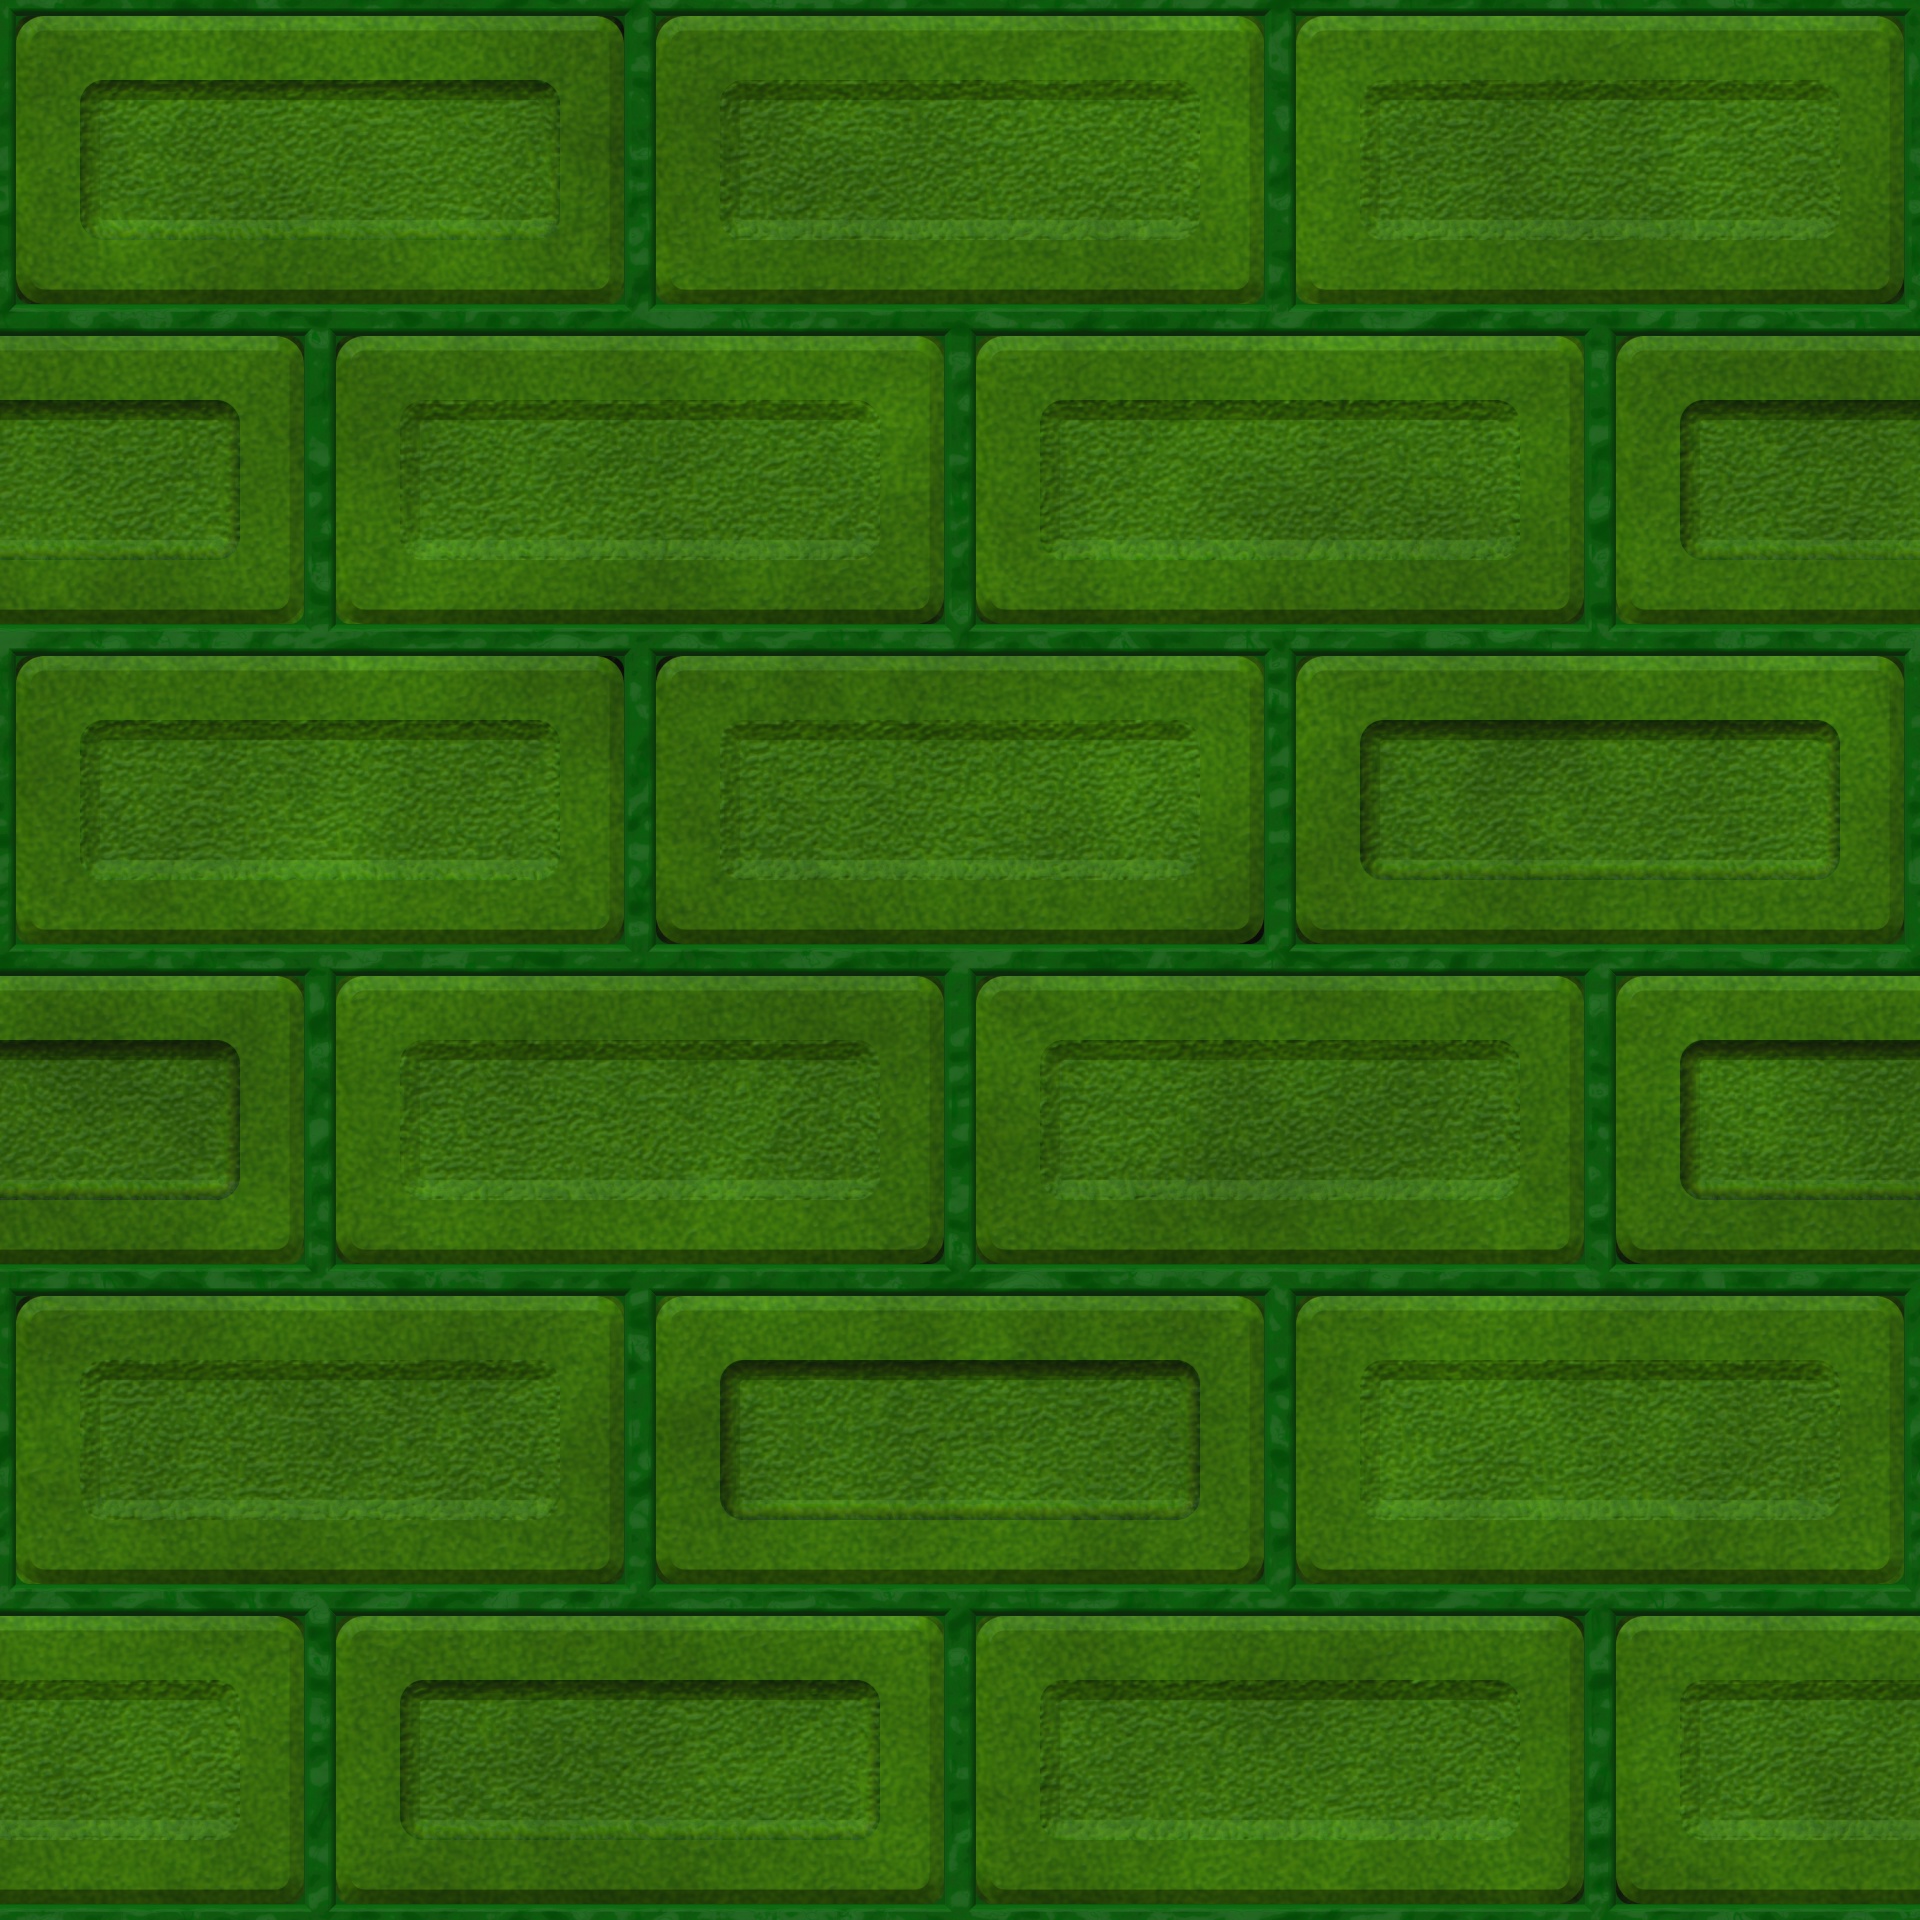 textured bricks in green